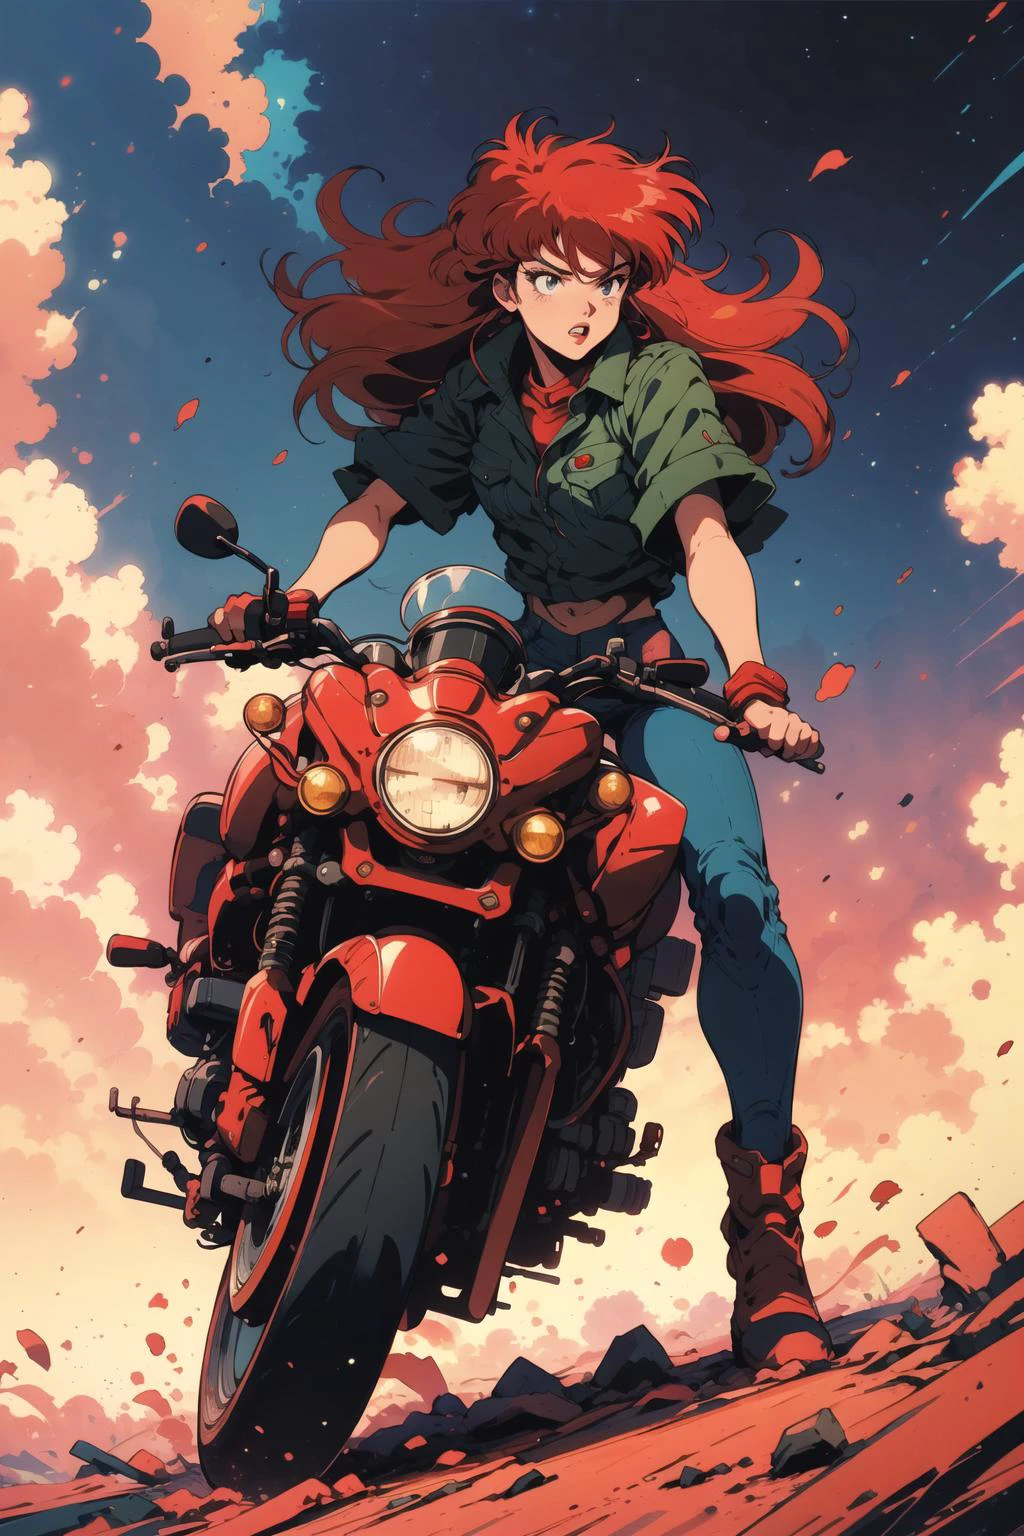 pôster de souryuu asuka langley andando de motocicleta, cabelo vermelho, arte conceitual,  retro anime, pose dinâmica, quadrinho, fantasia,